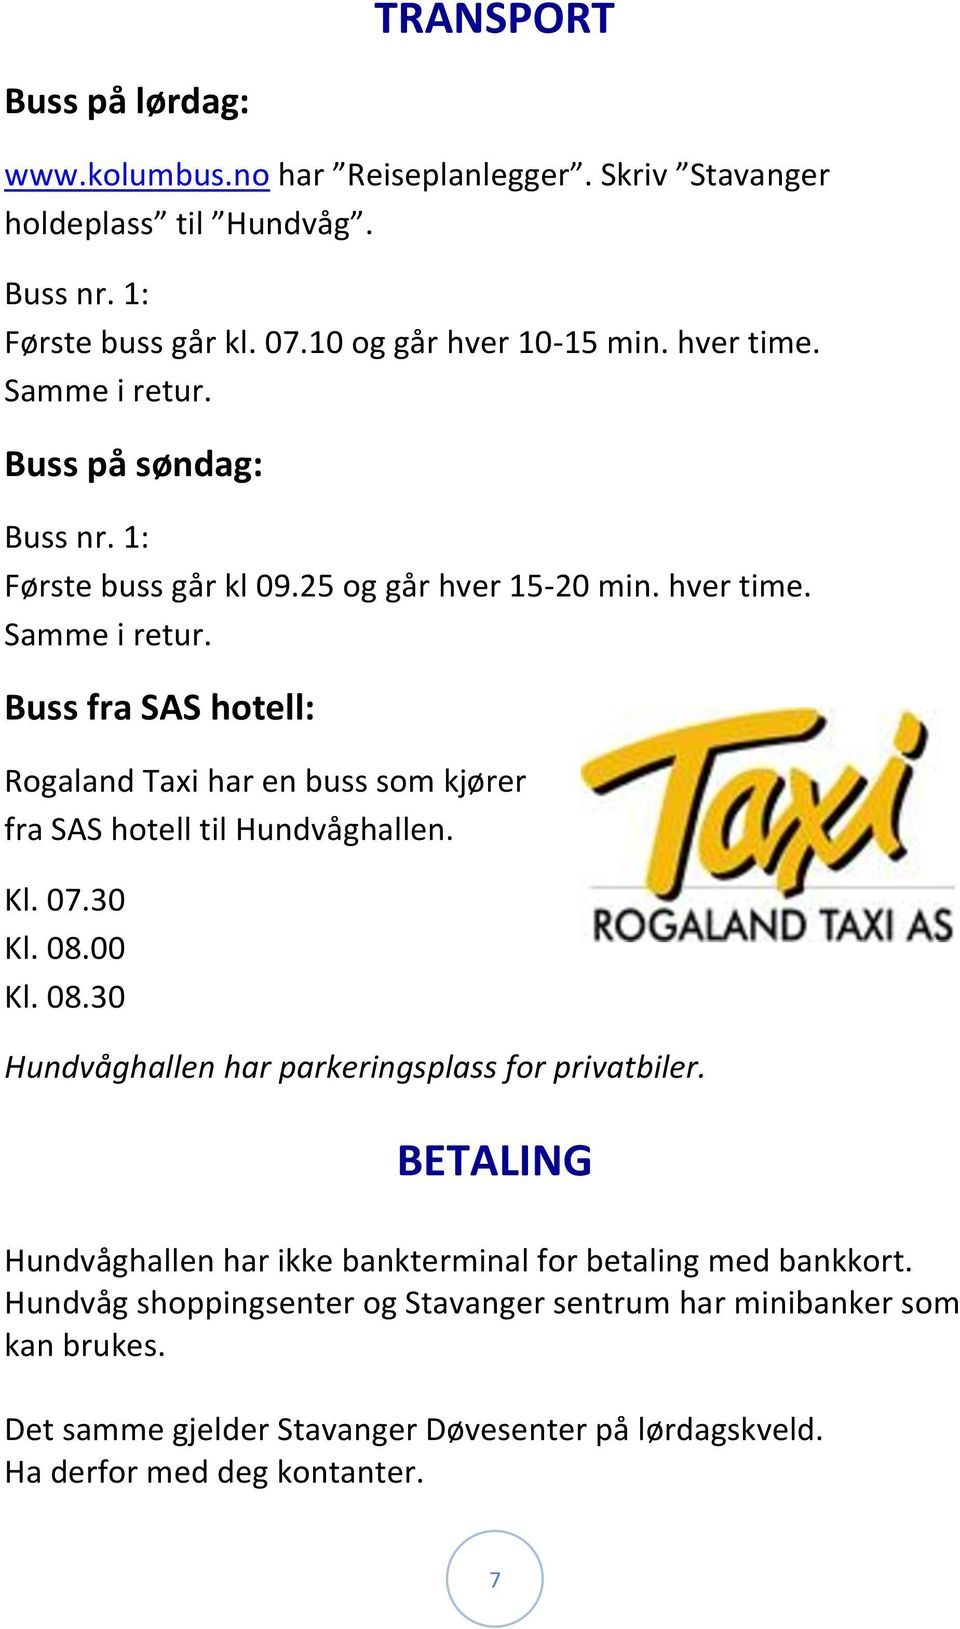 Buss fra SAS hotell: Rogaland Taxi har en buss som kjører fra SAS hotell til Hundvåghallen. Kl. 07.30 Kl. 08.00 Kl. 08.30 Hundvåghallen har parkeringsplass for privatbiler.